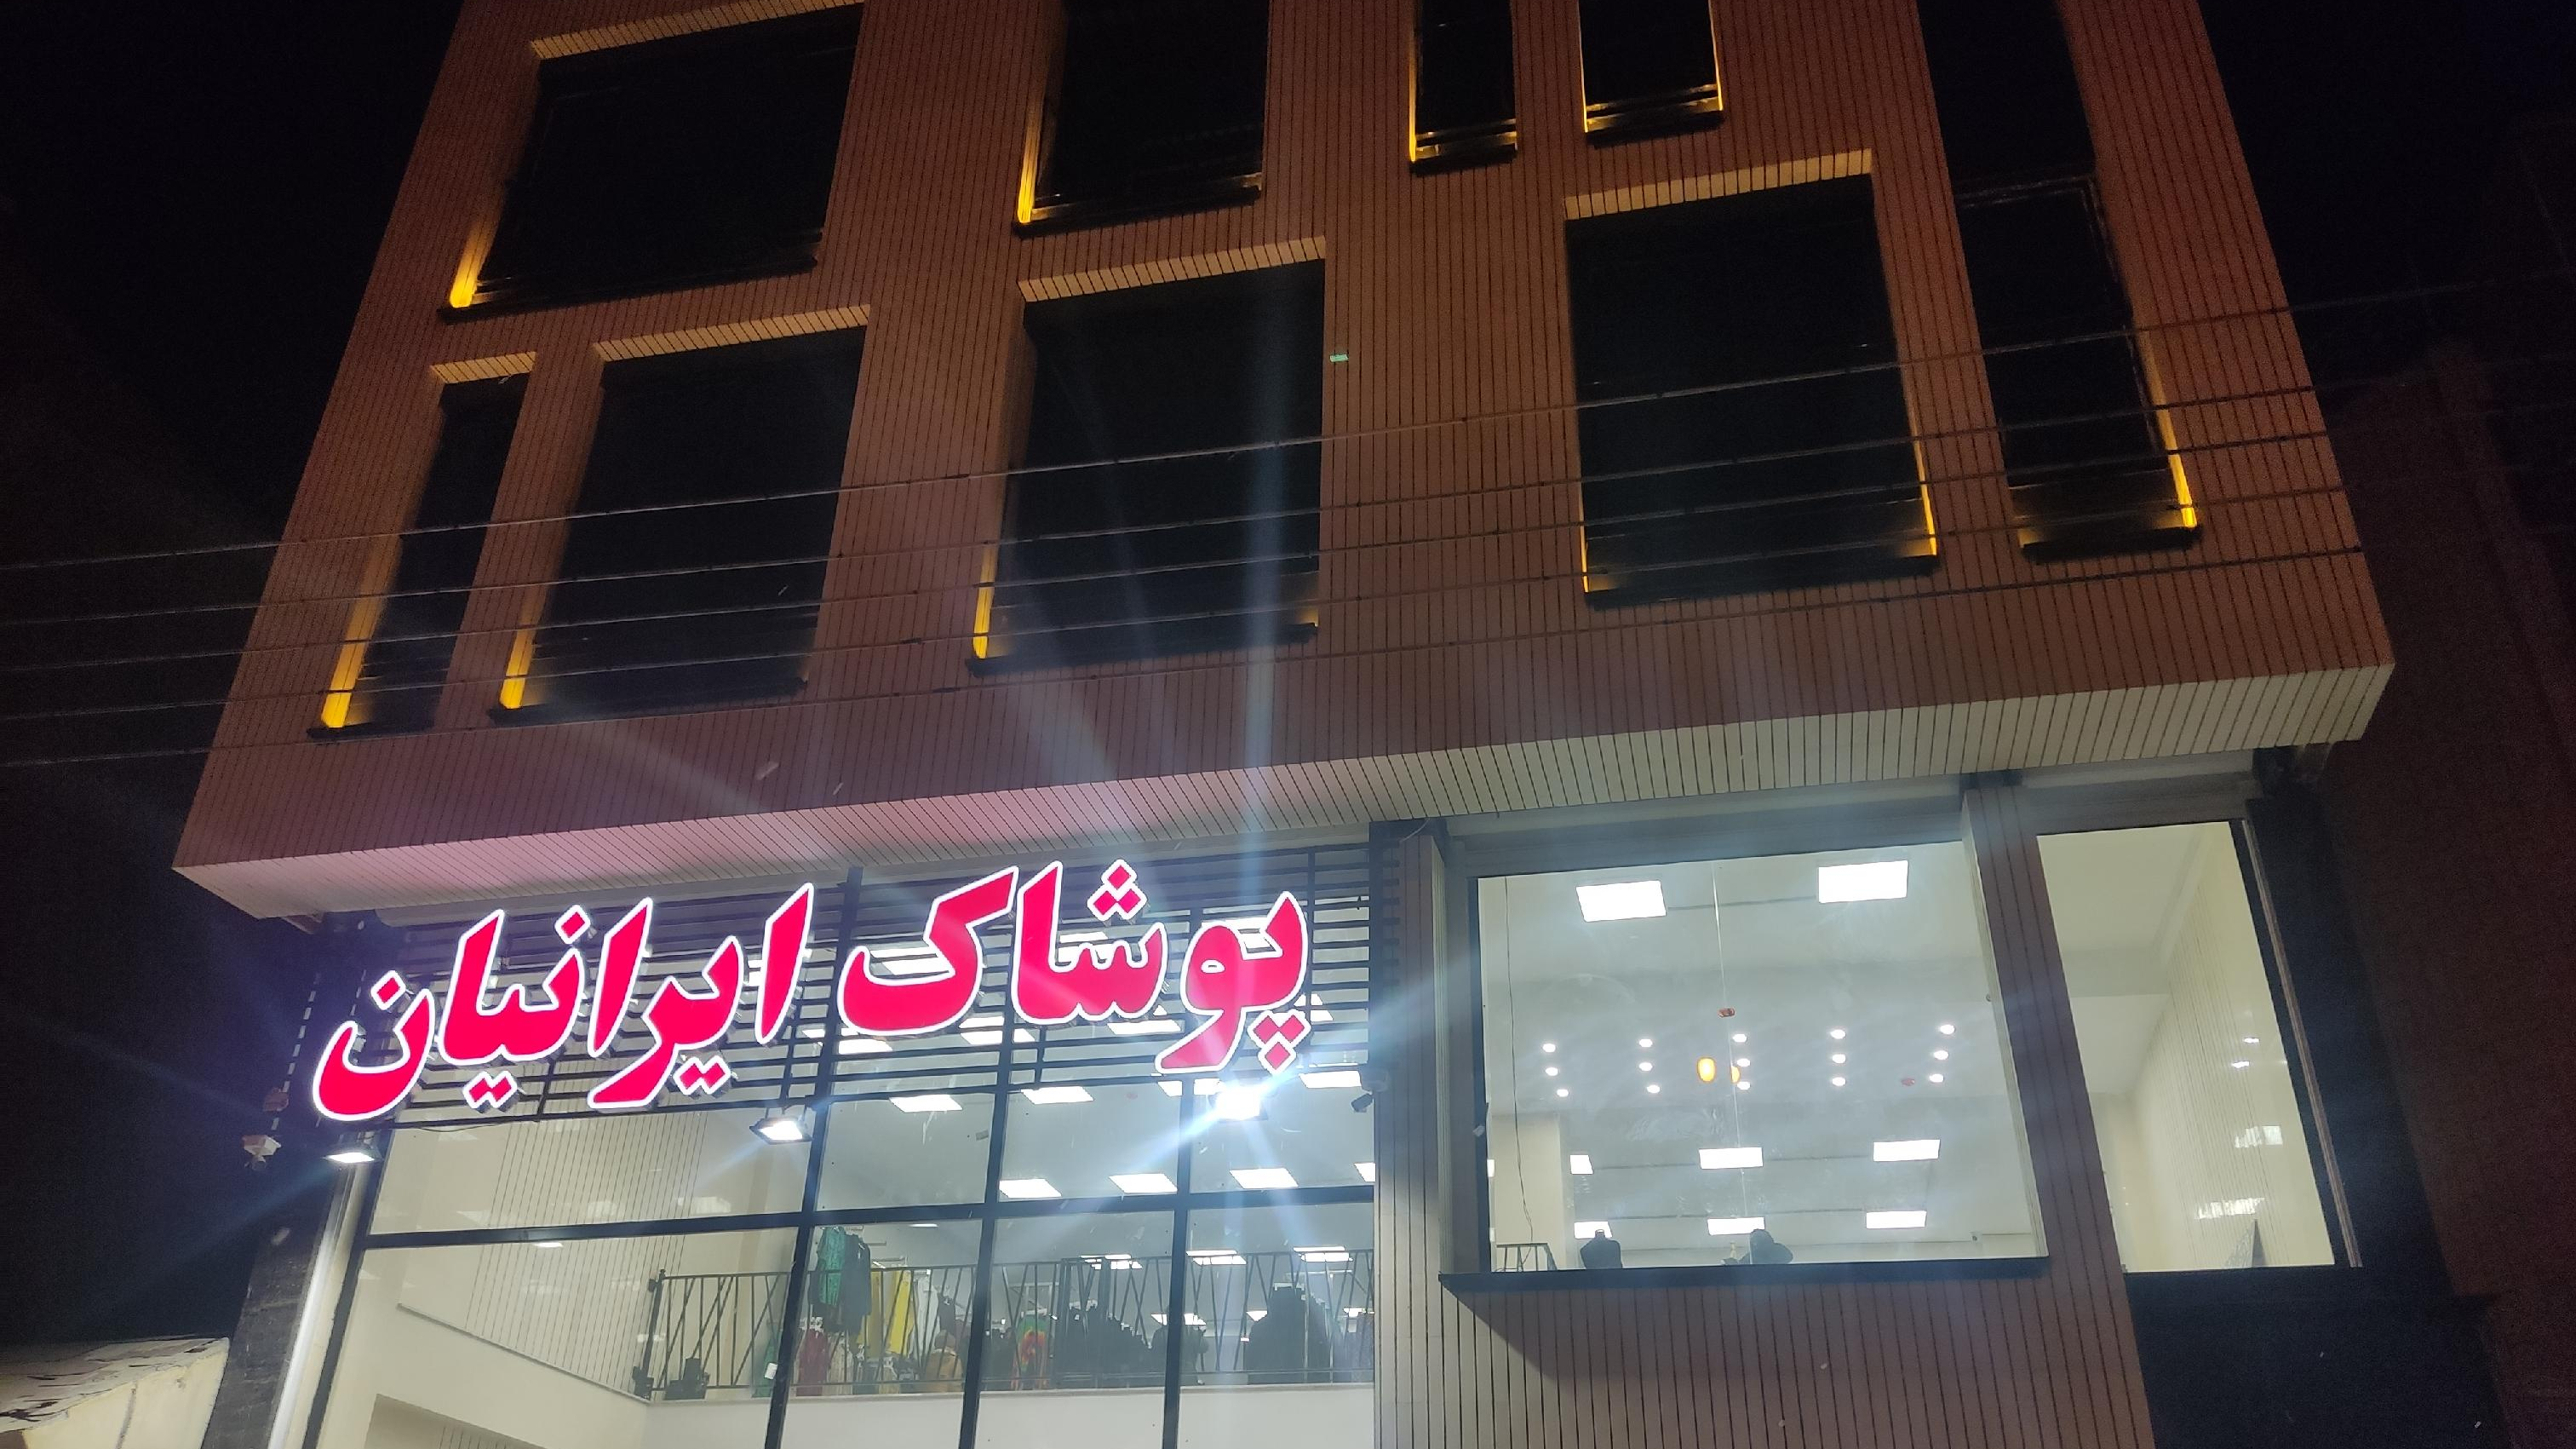 فروشگاه پوشاک ایرانیان